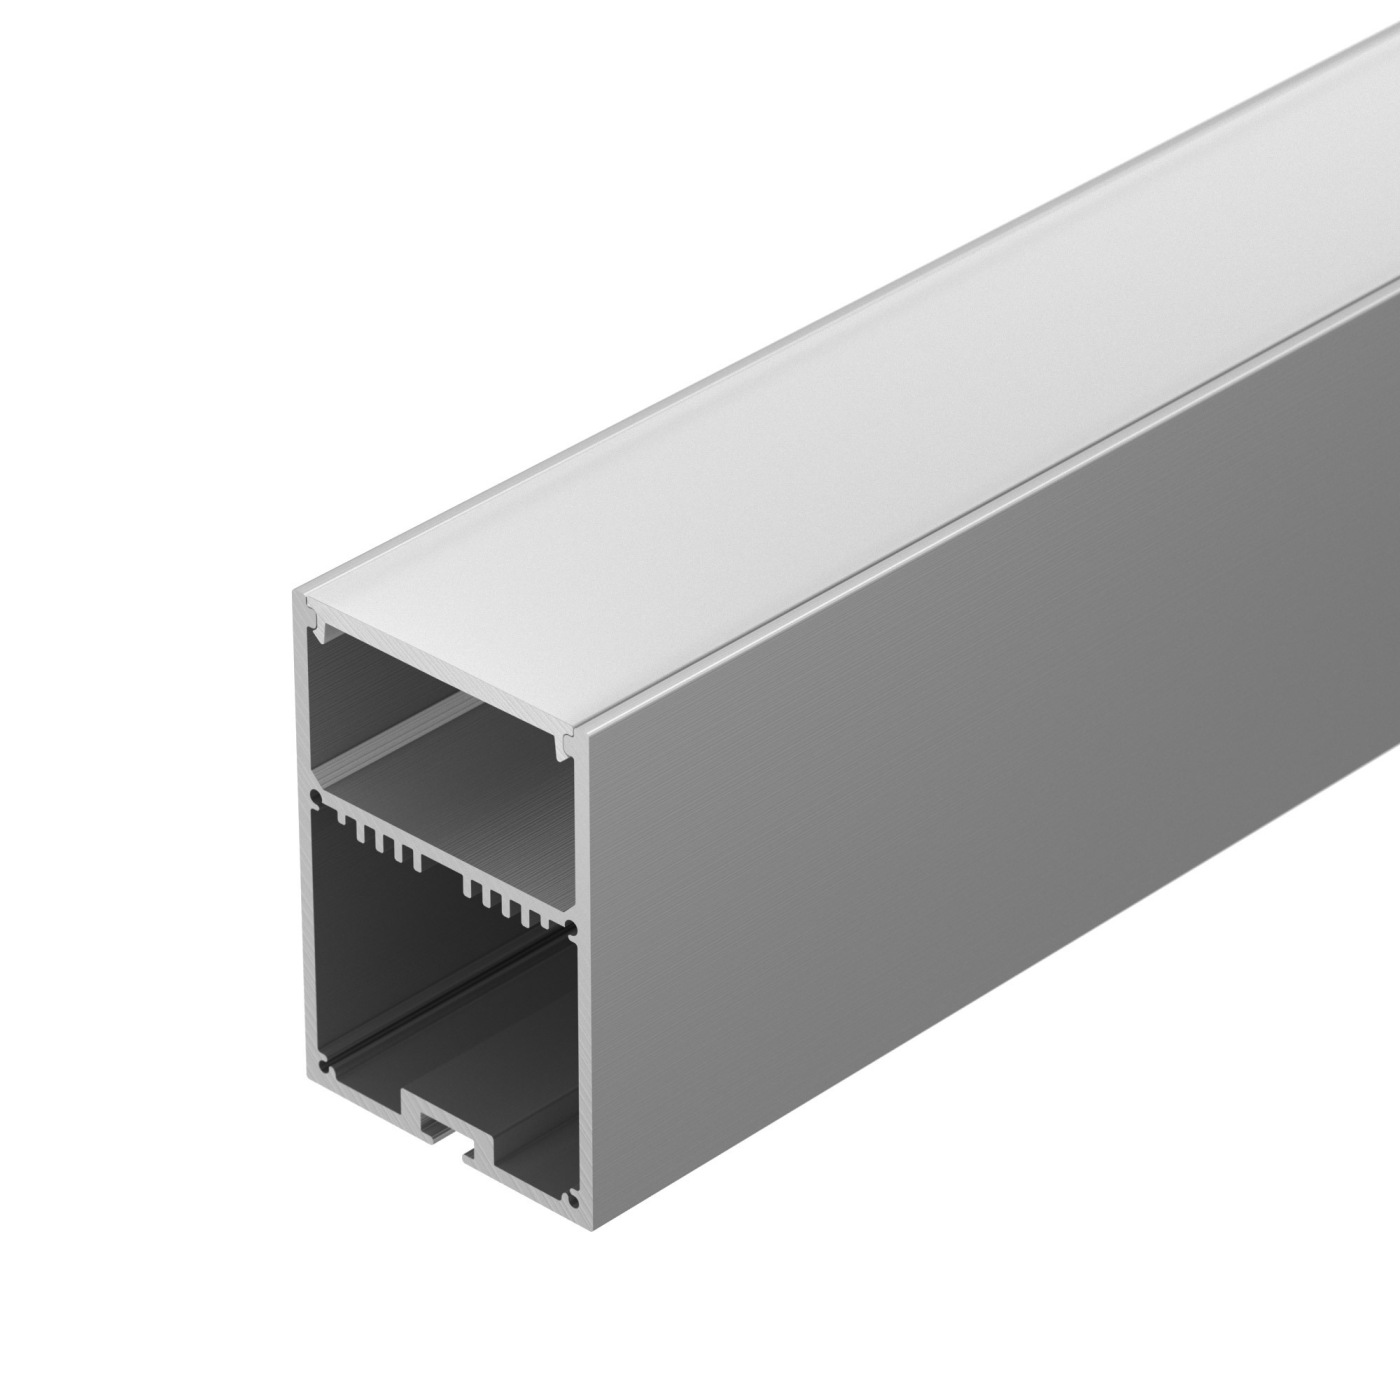 Профиль SL-LINE-4970-2000 ANOD профиль алюминиевый накладной подвесной с отсеком для бп серебро cab265